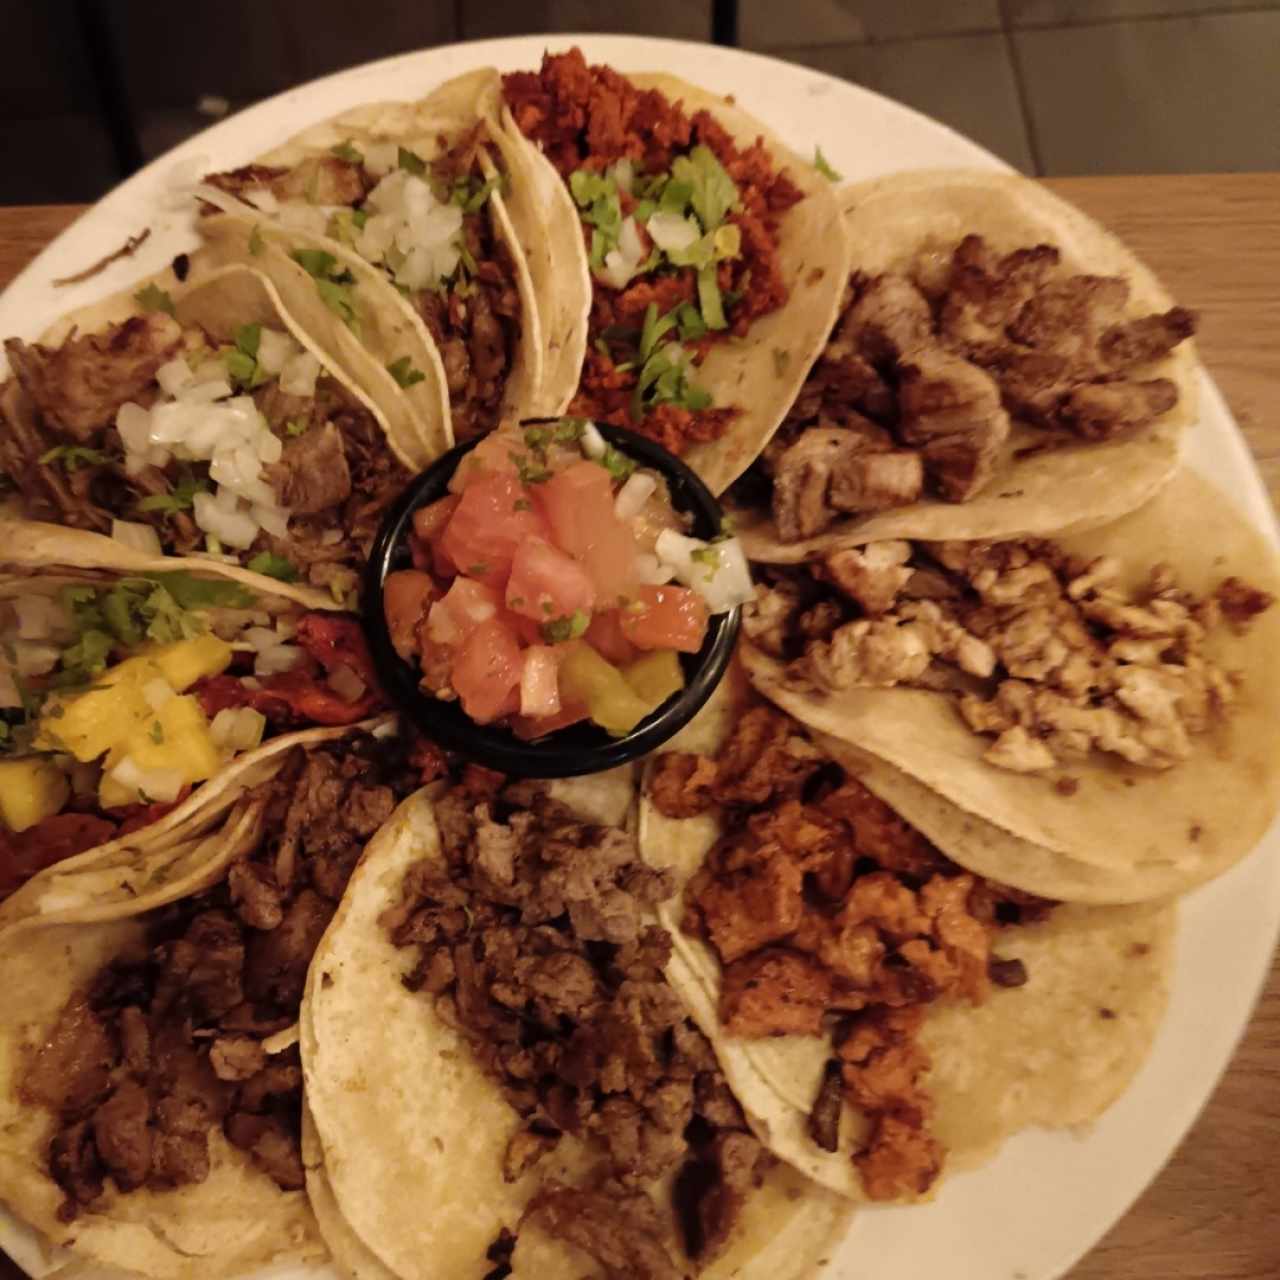 Tacos mixto